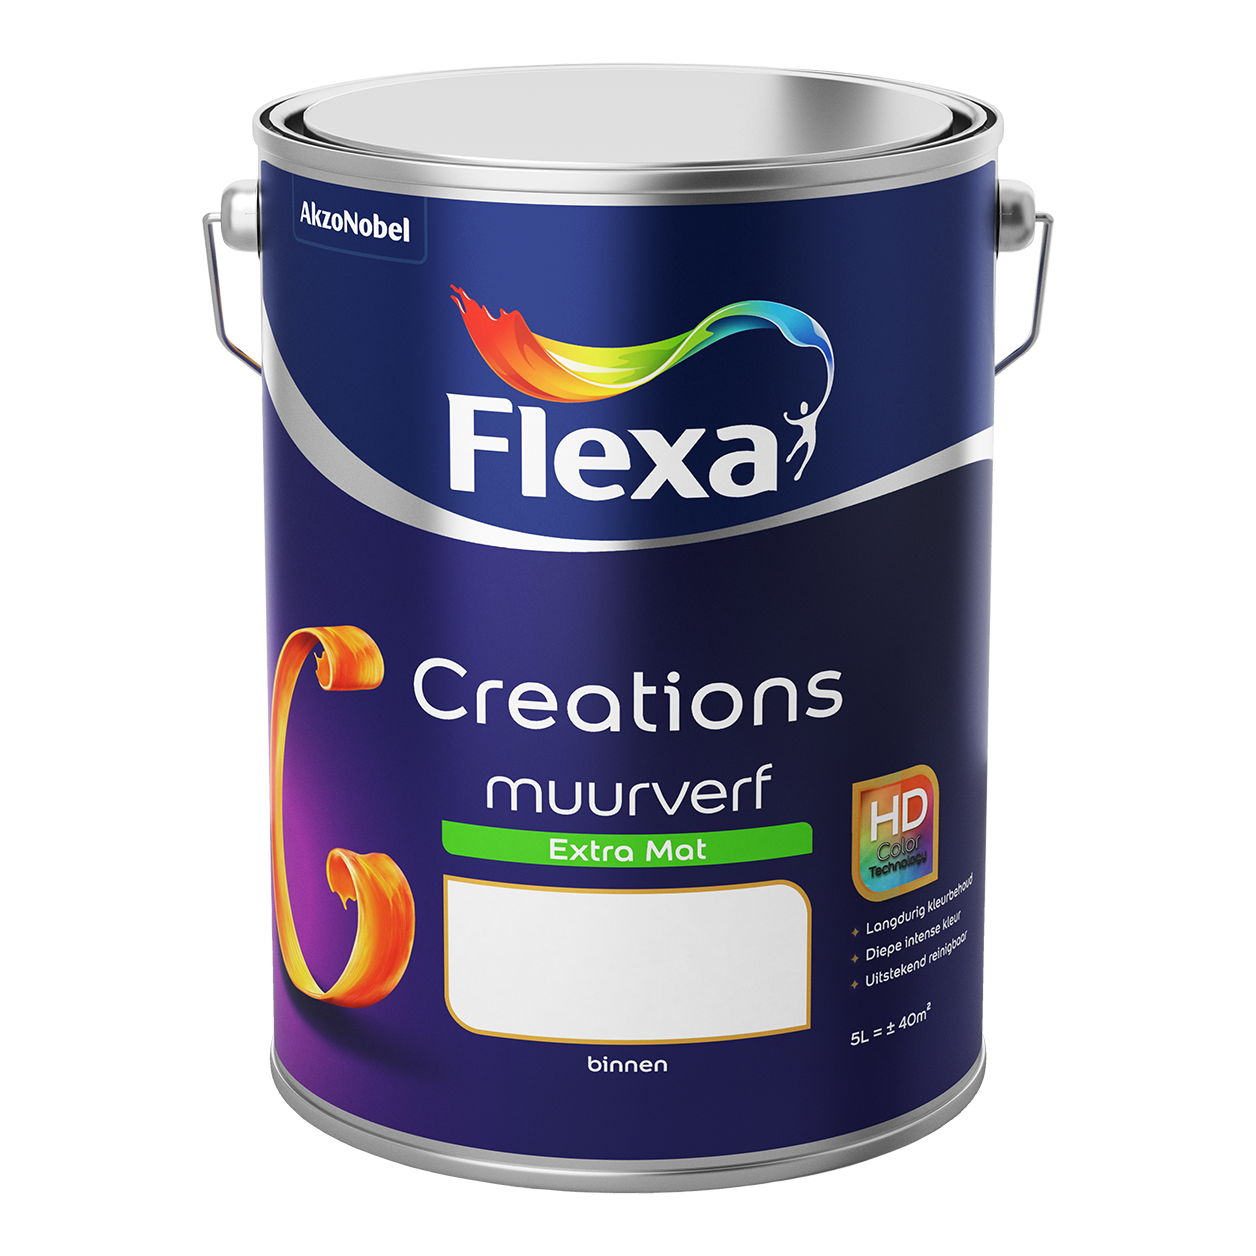 overzien Omringd Wiskunde Flexa Creations | Verf in alle kleuren voor binnen en buiten – Flexa | Flexa